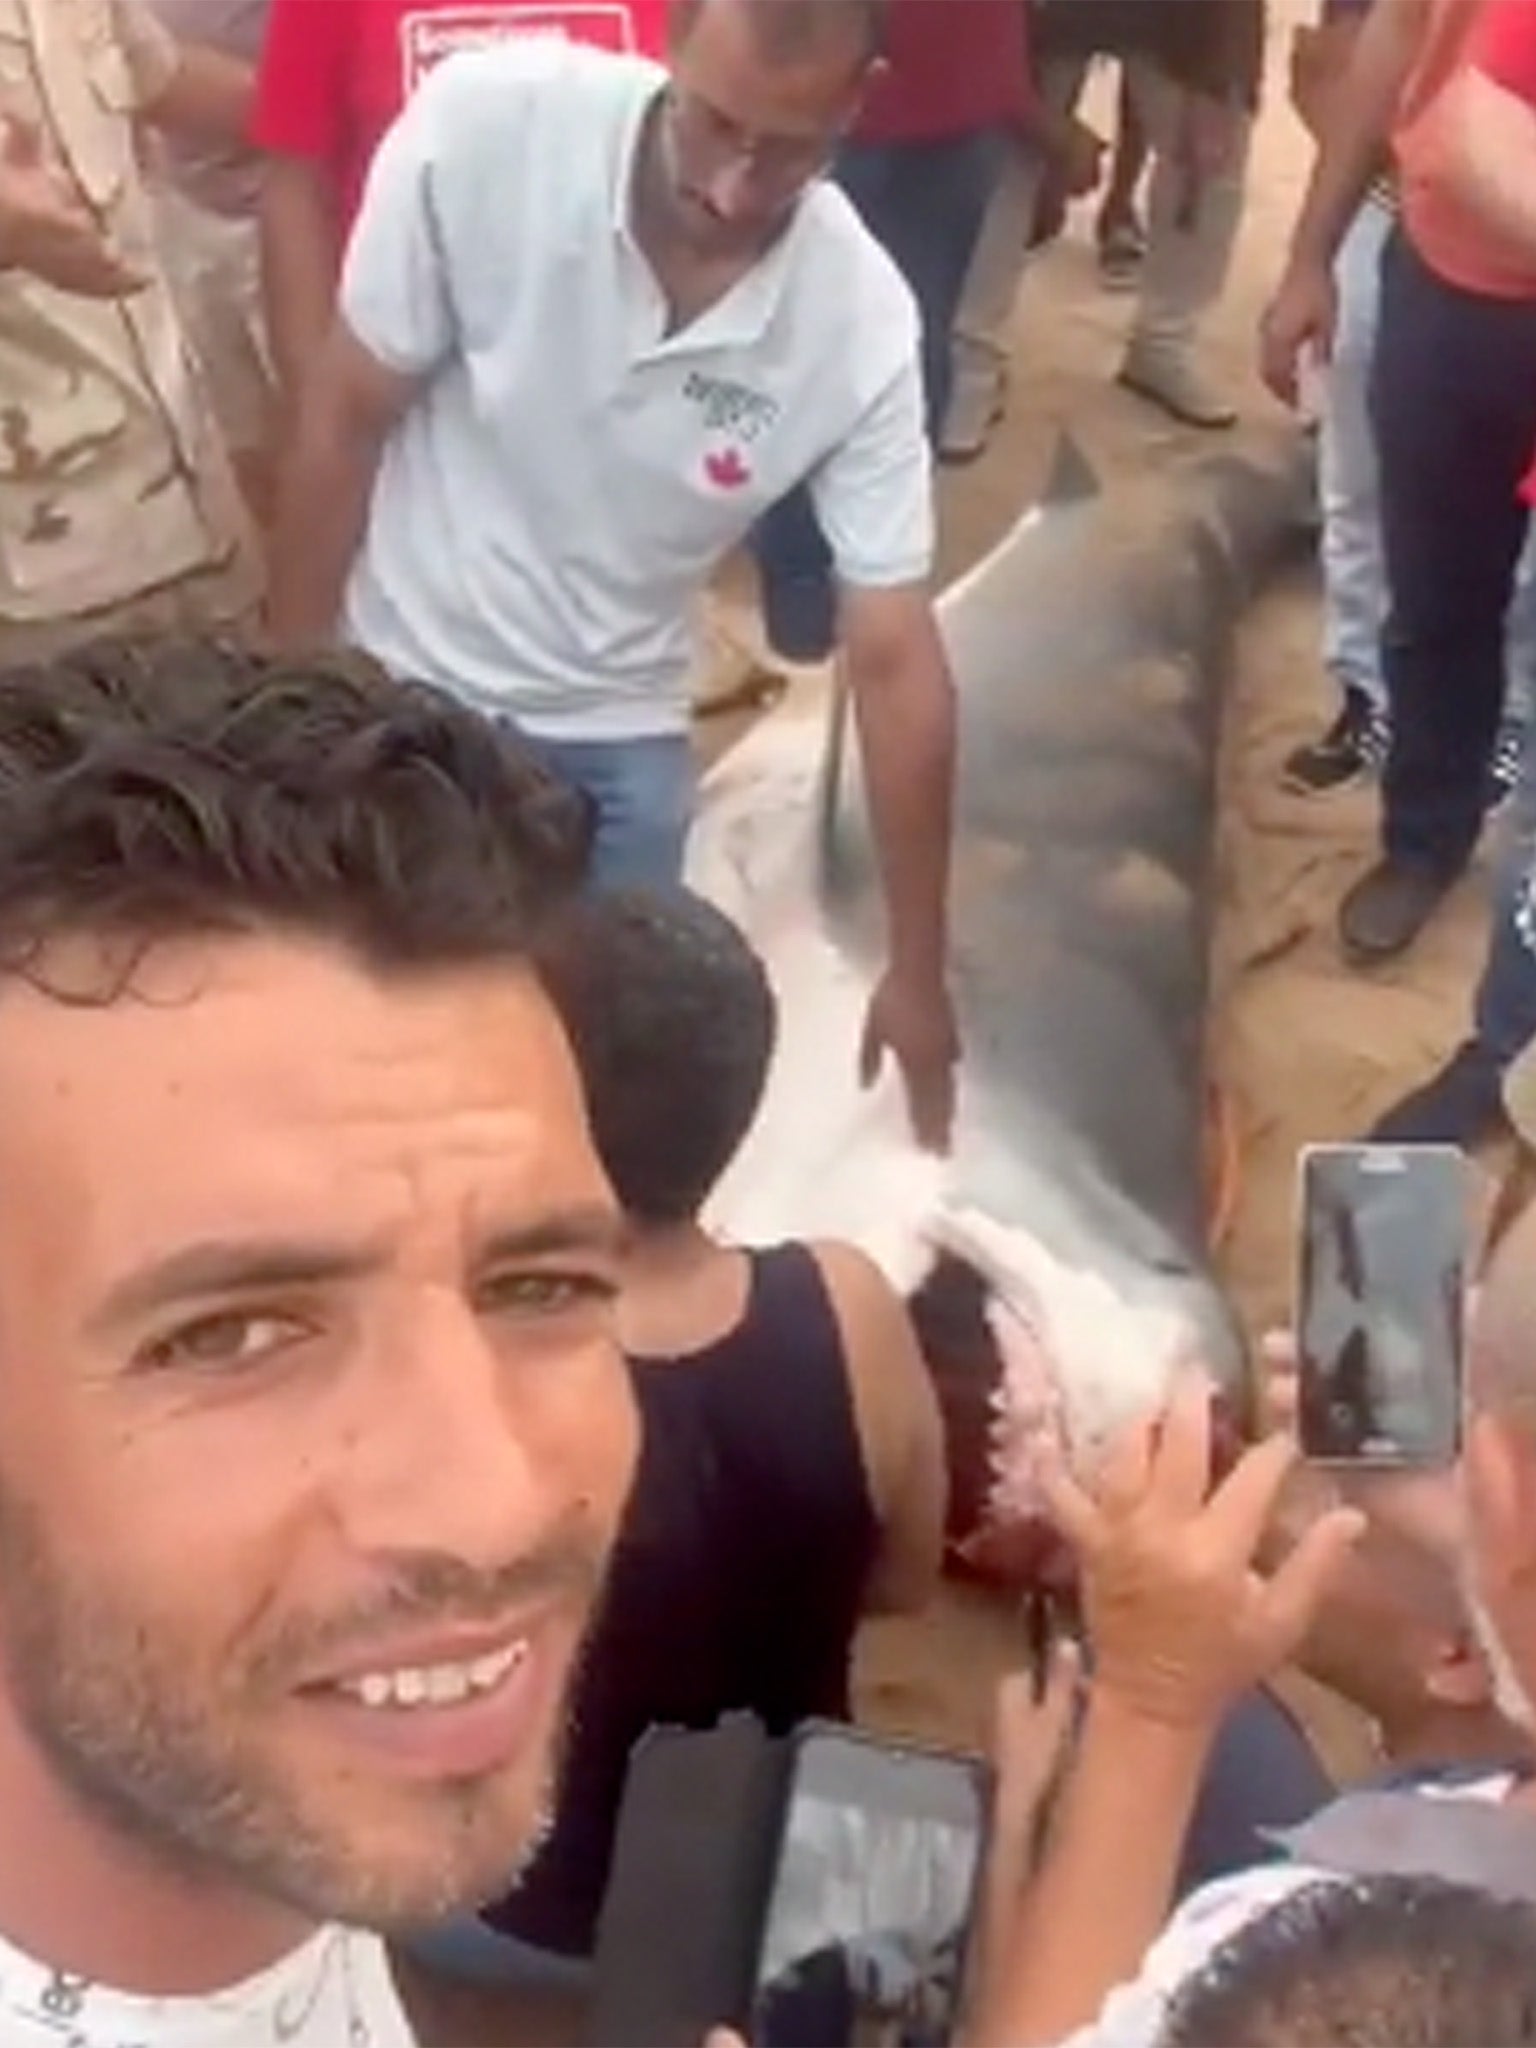 tourist in egypt eaten by shark